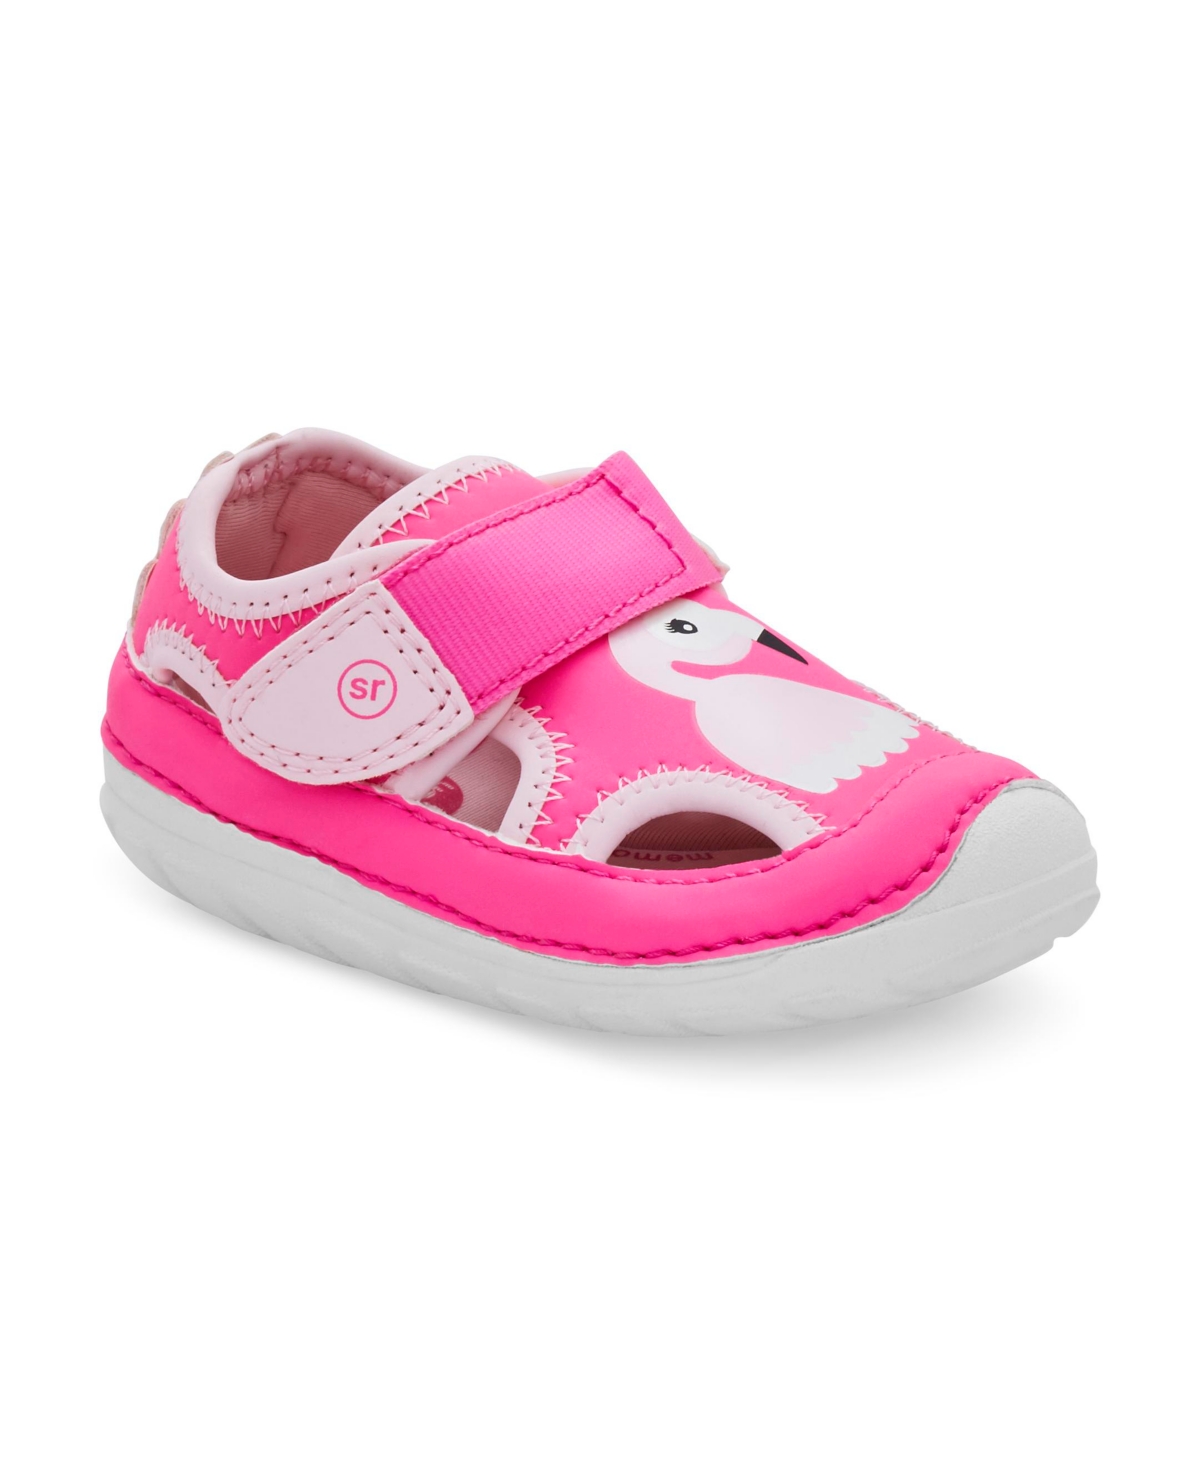 Stride Rite Baby Girls Sm Splash Polyurethane Sandals In Pink Flamingo